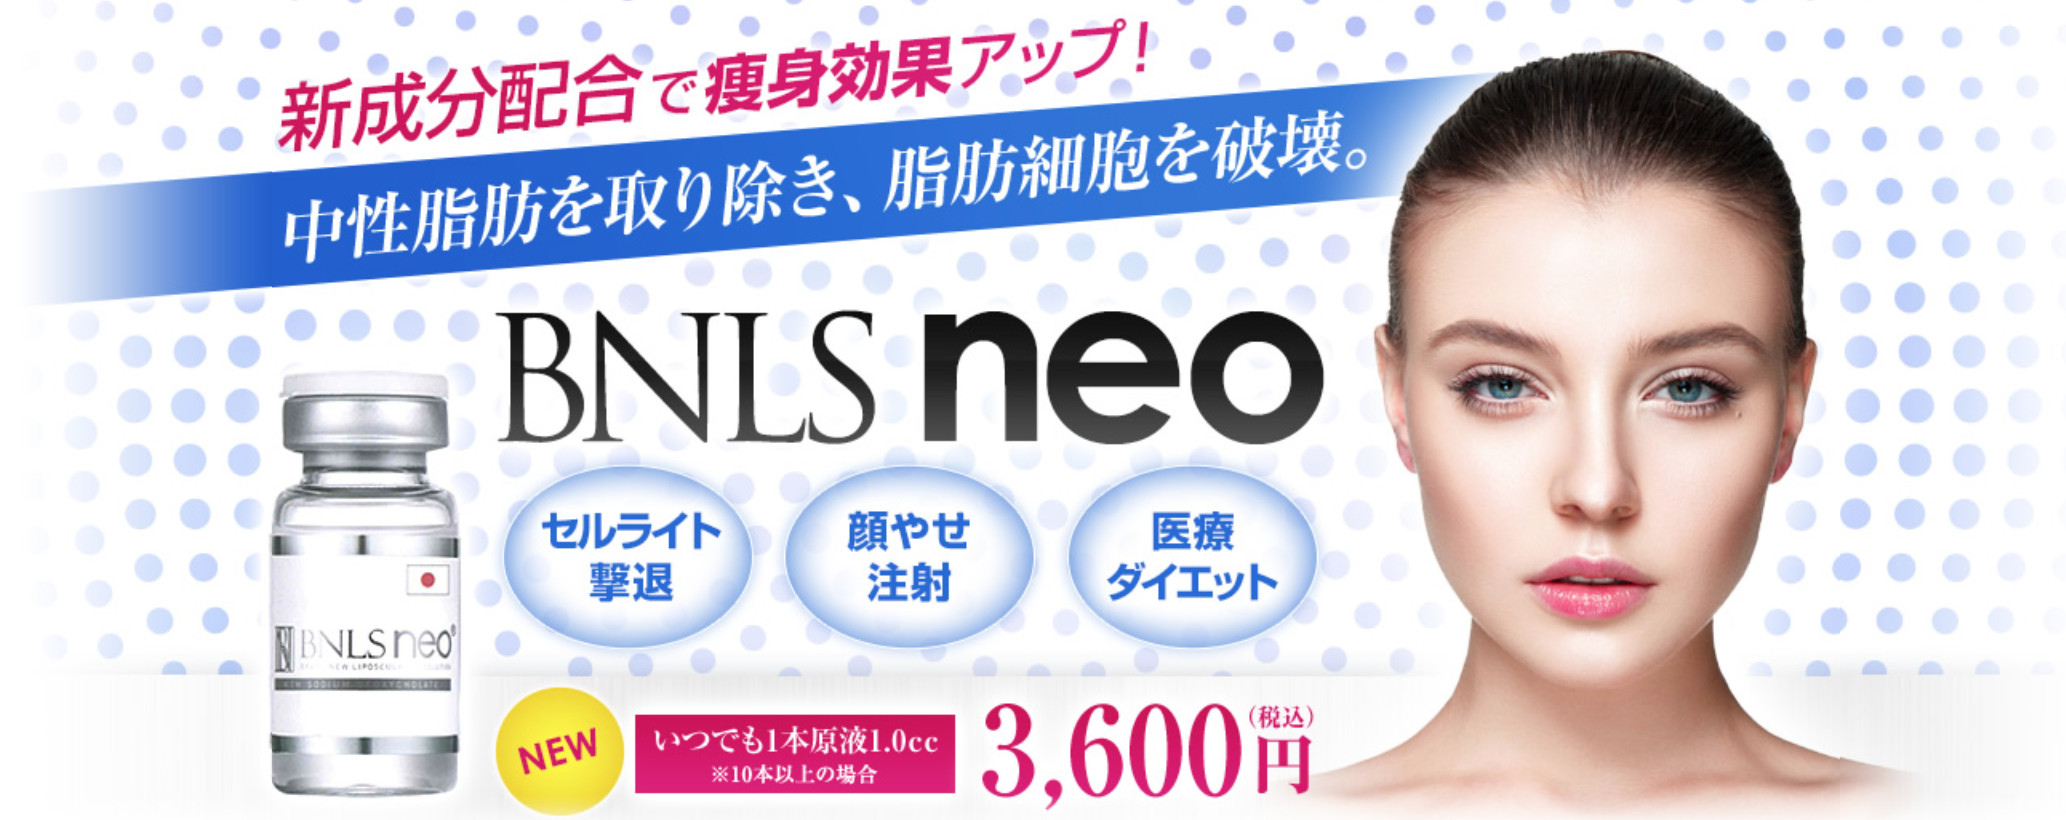 湘南美容クリニック(SBC)のBNLSneoは最新の脂肪溶解注射。小顔、エラ張り、部分痩せに効果の高い医療ダイエットです。